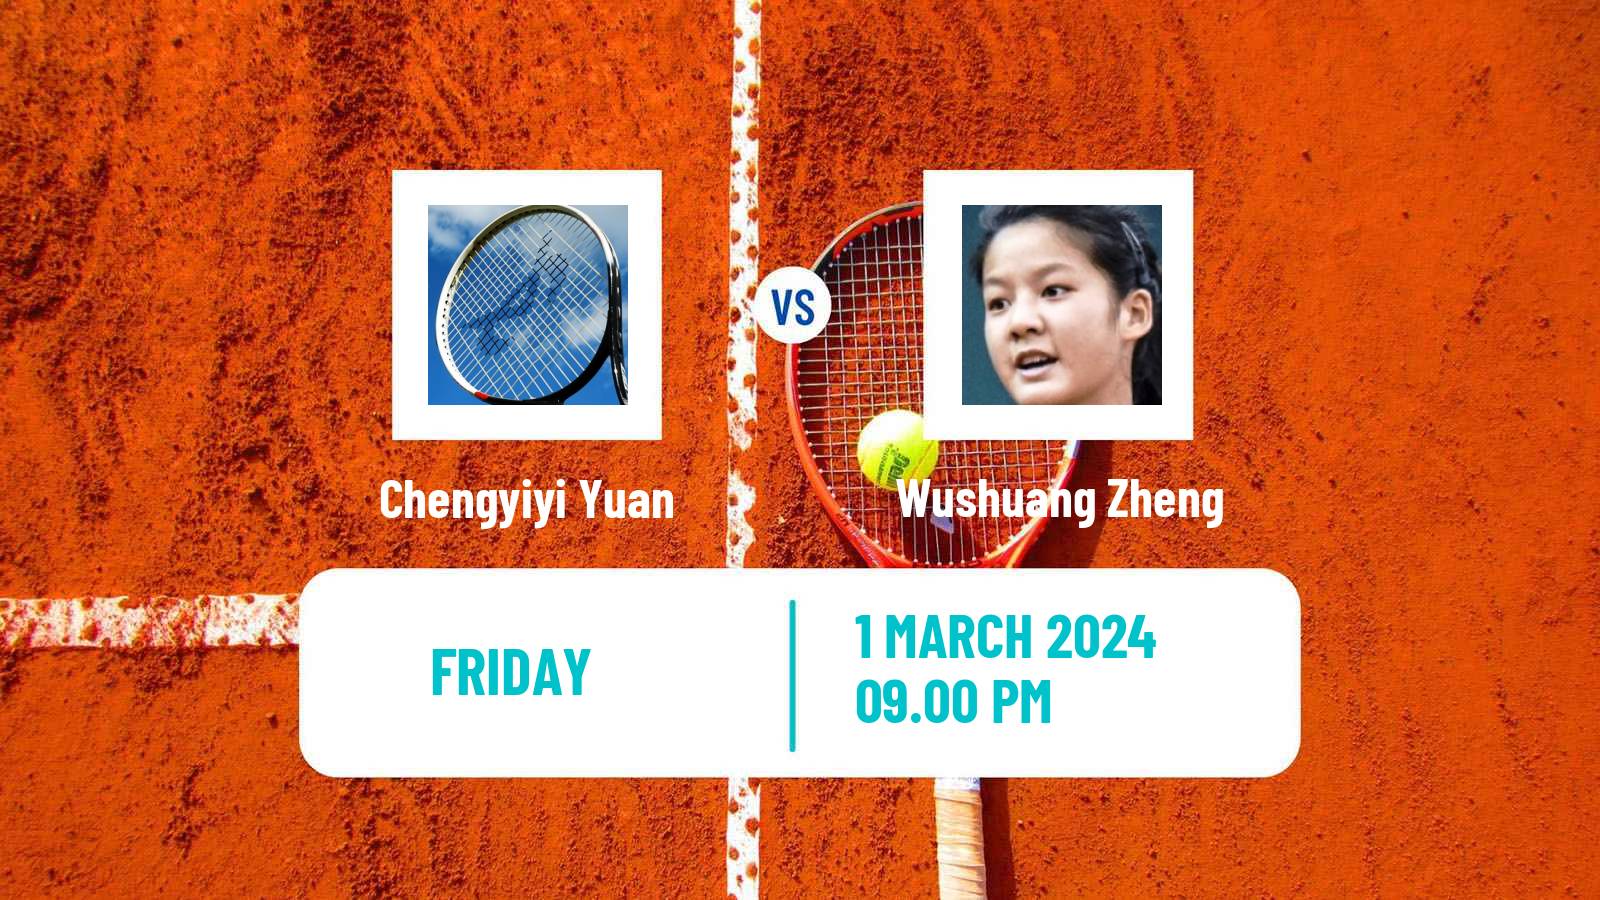 Tennis ITF W15 Nakhon Si Thammarat 2 Women Chengyiyi Yuan - Wushuang Zheng